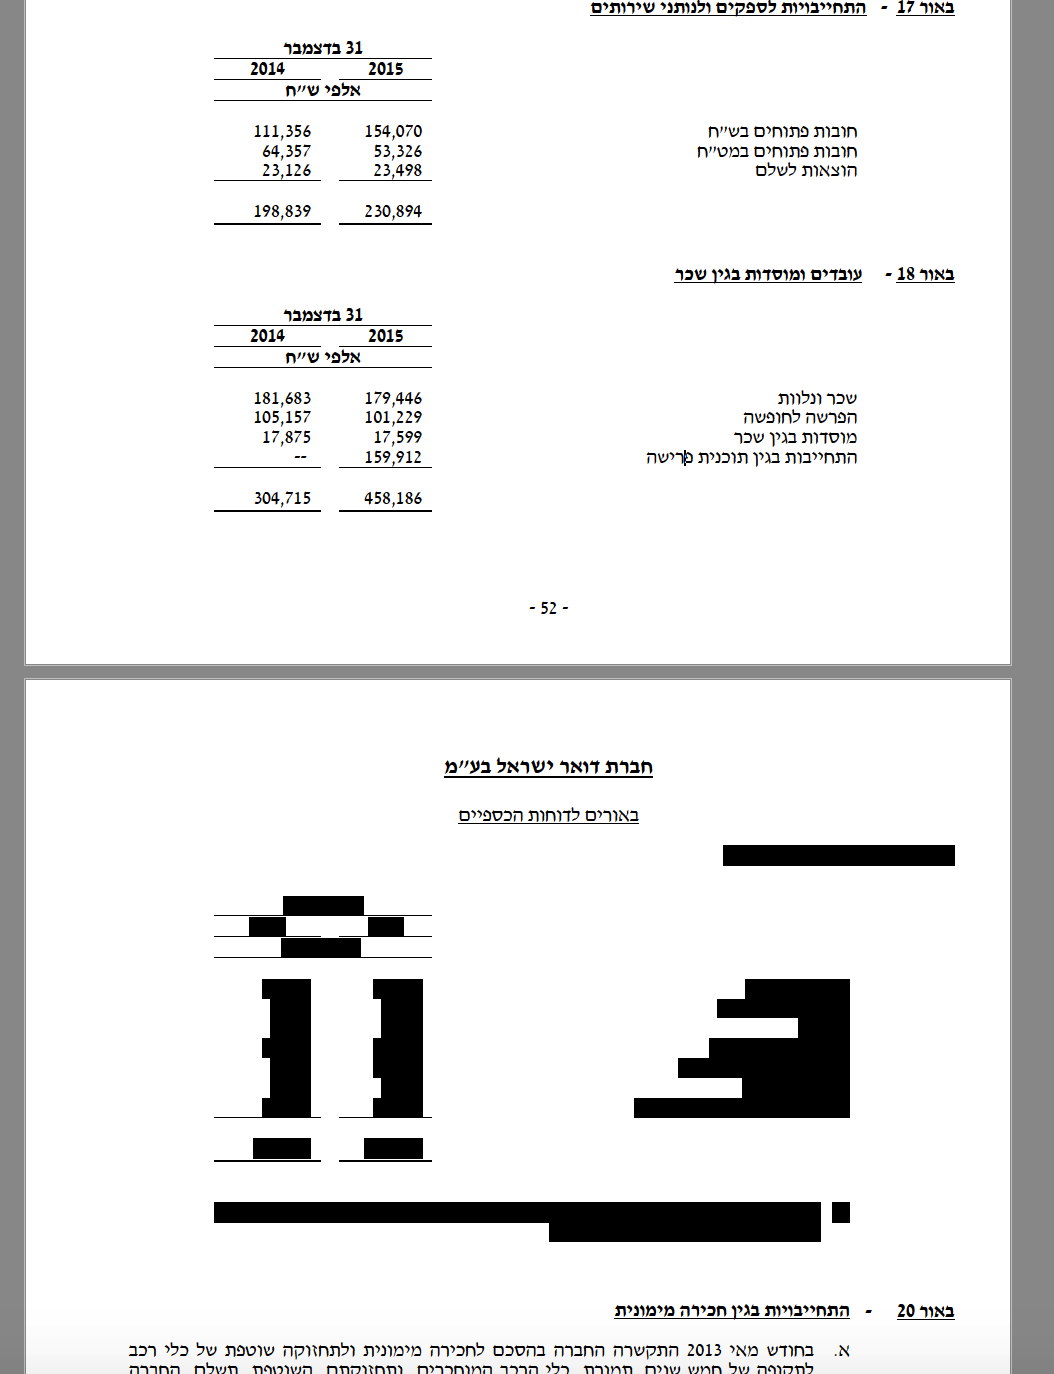 מידע מצונזר בדוחות הכספיים של הדואר